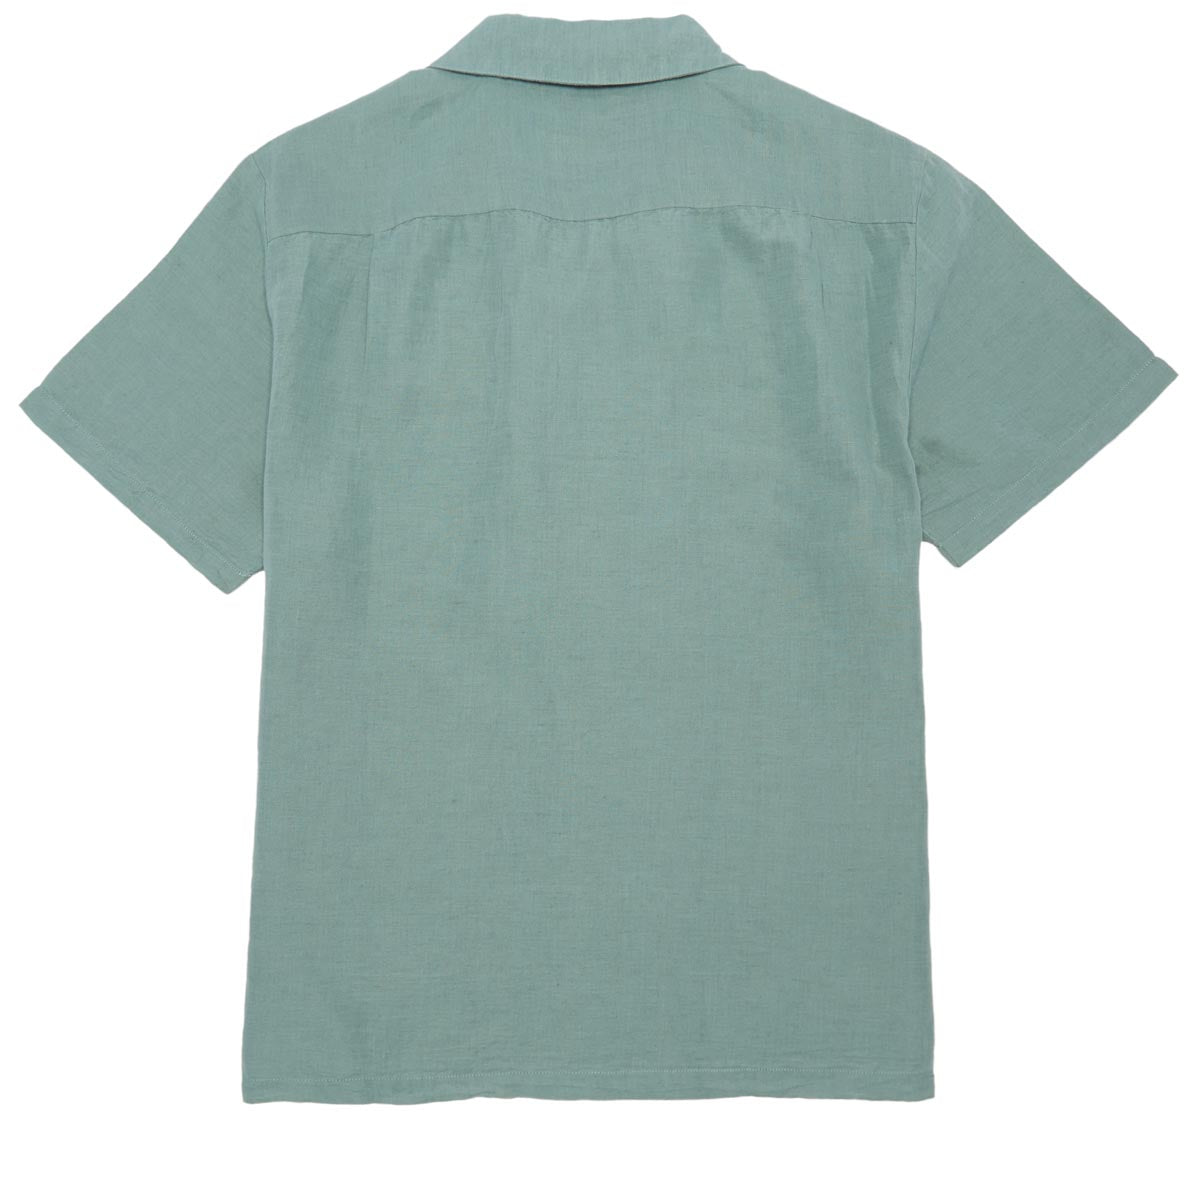 Brixton Bunker Linen Blend Shirt - Chinois Green image 2